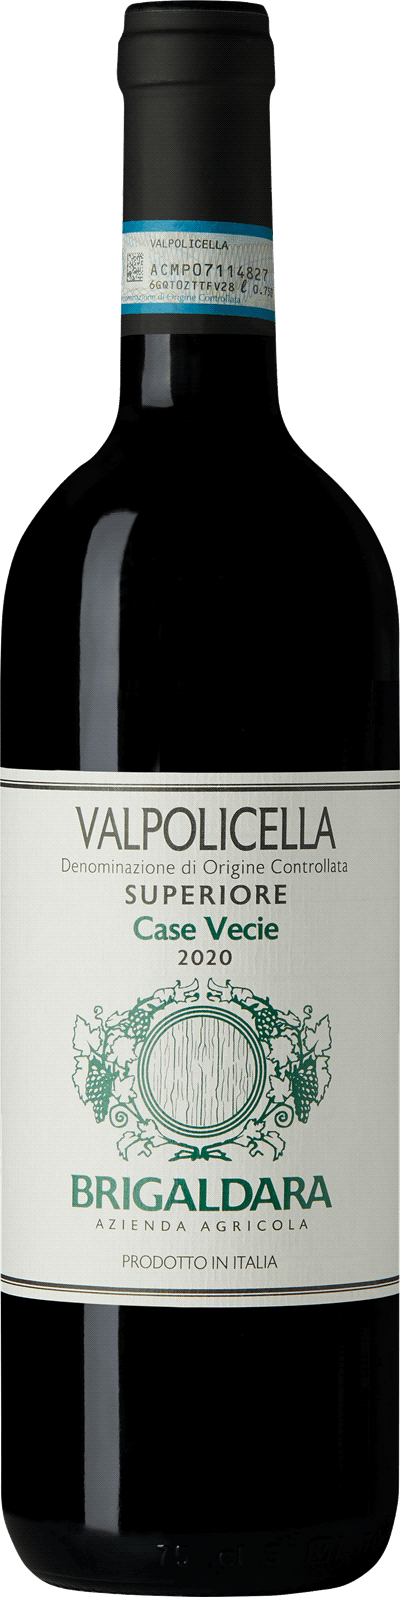 Case Vecie Valpolicella Superiore, 2020